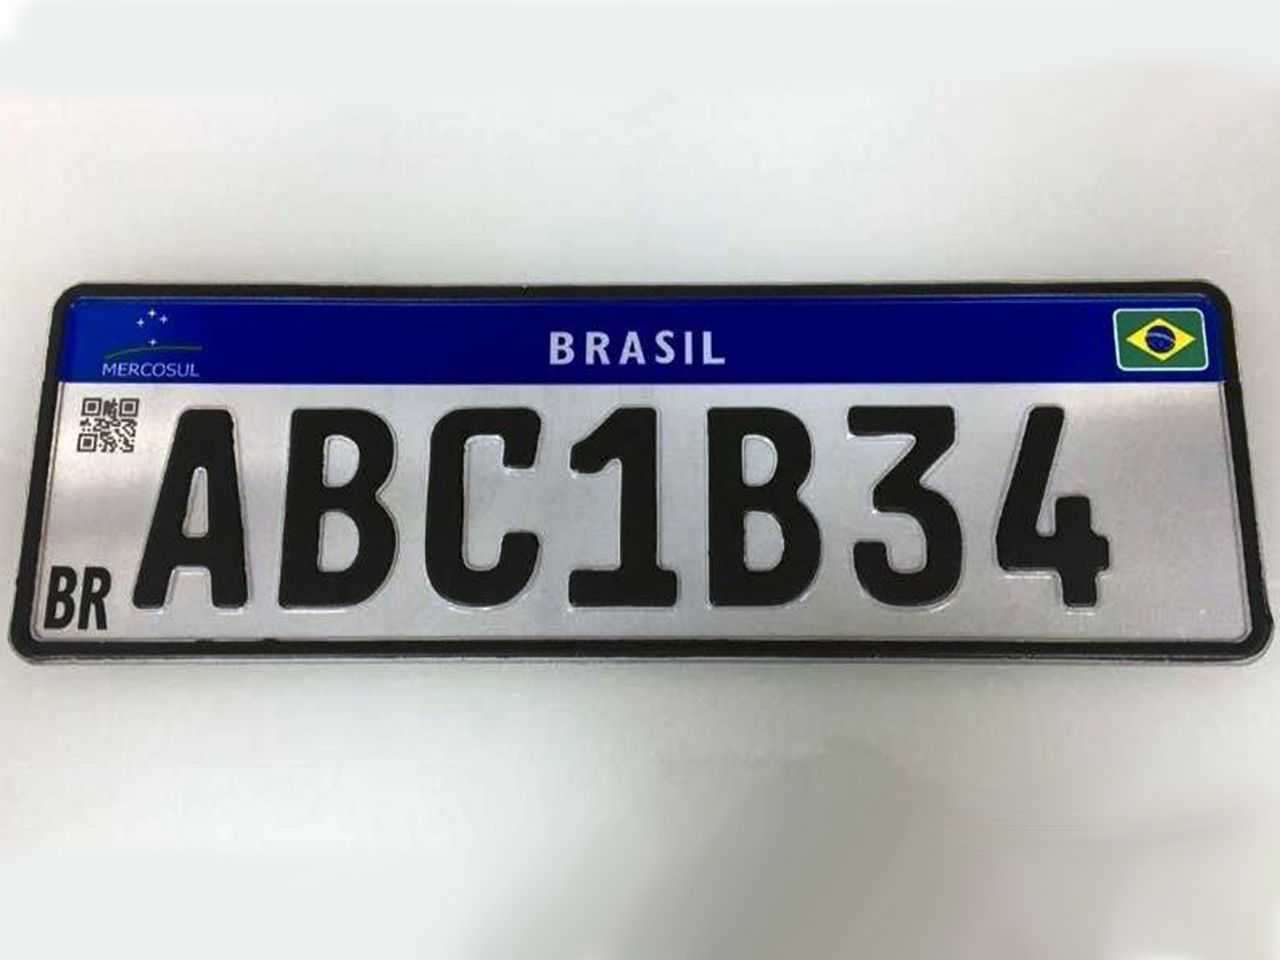 Acima a placa no padrão definitivo que será adotado nos veículos aqui no Brasil